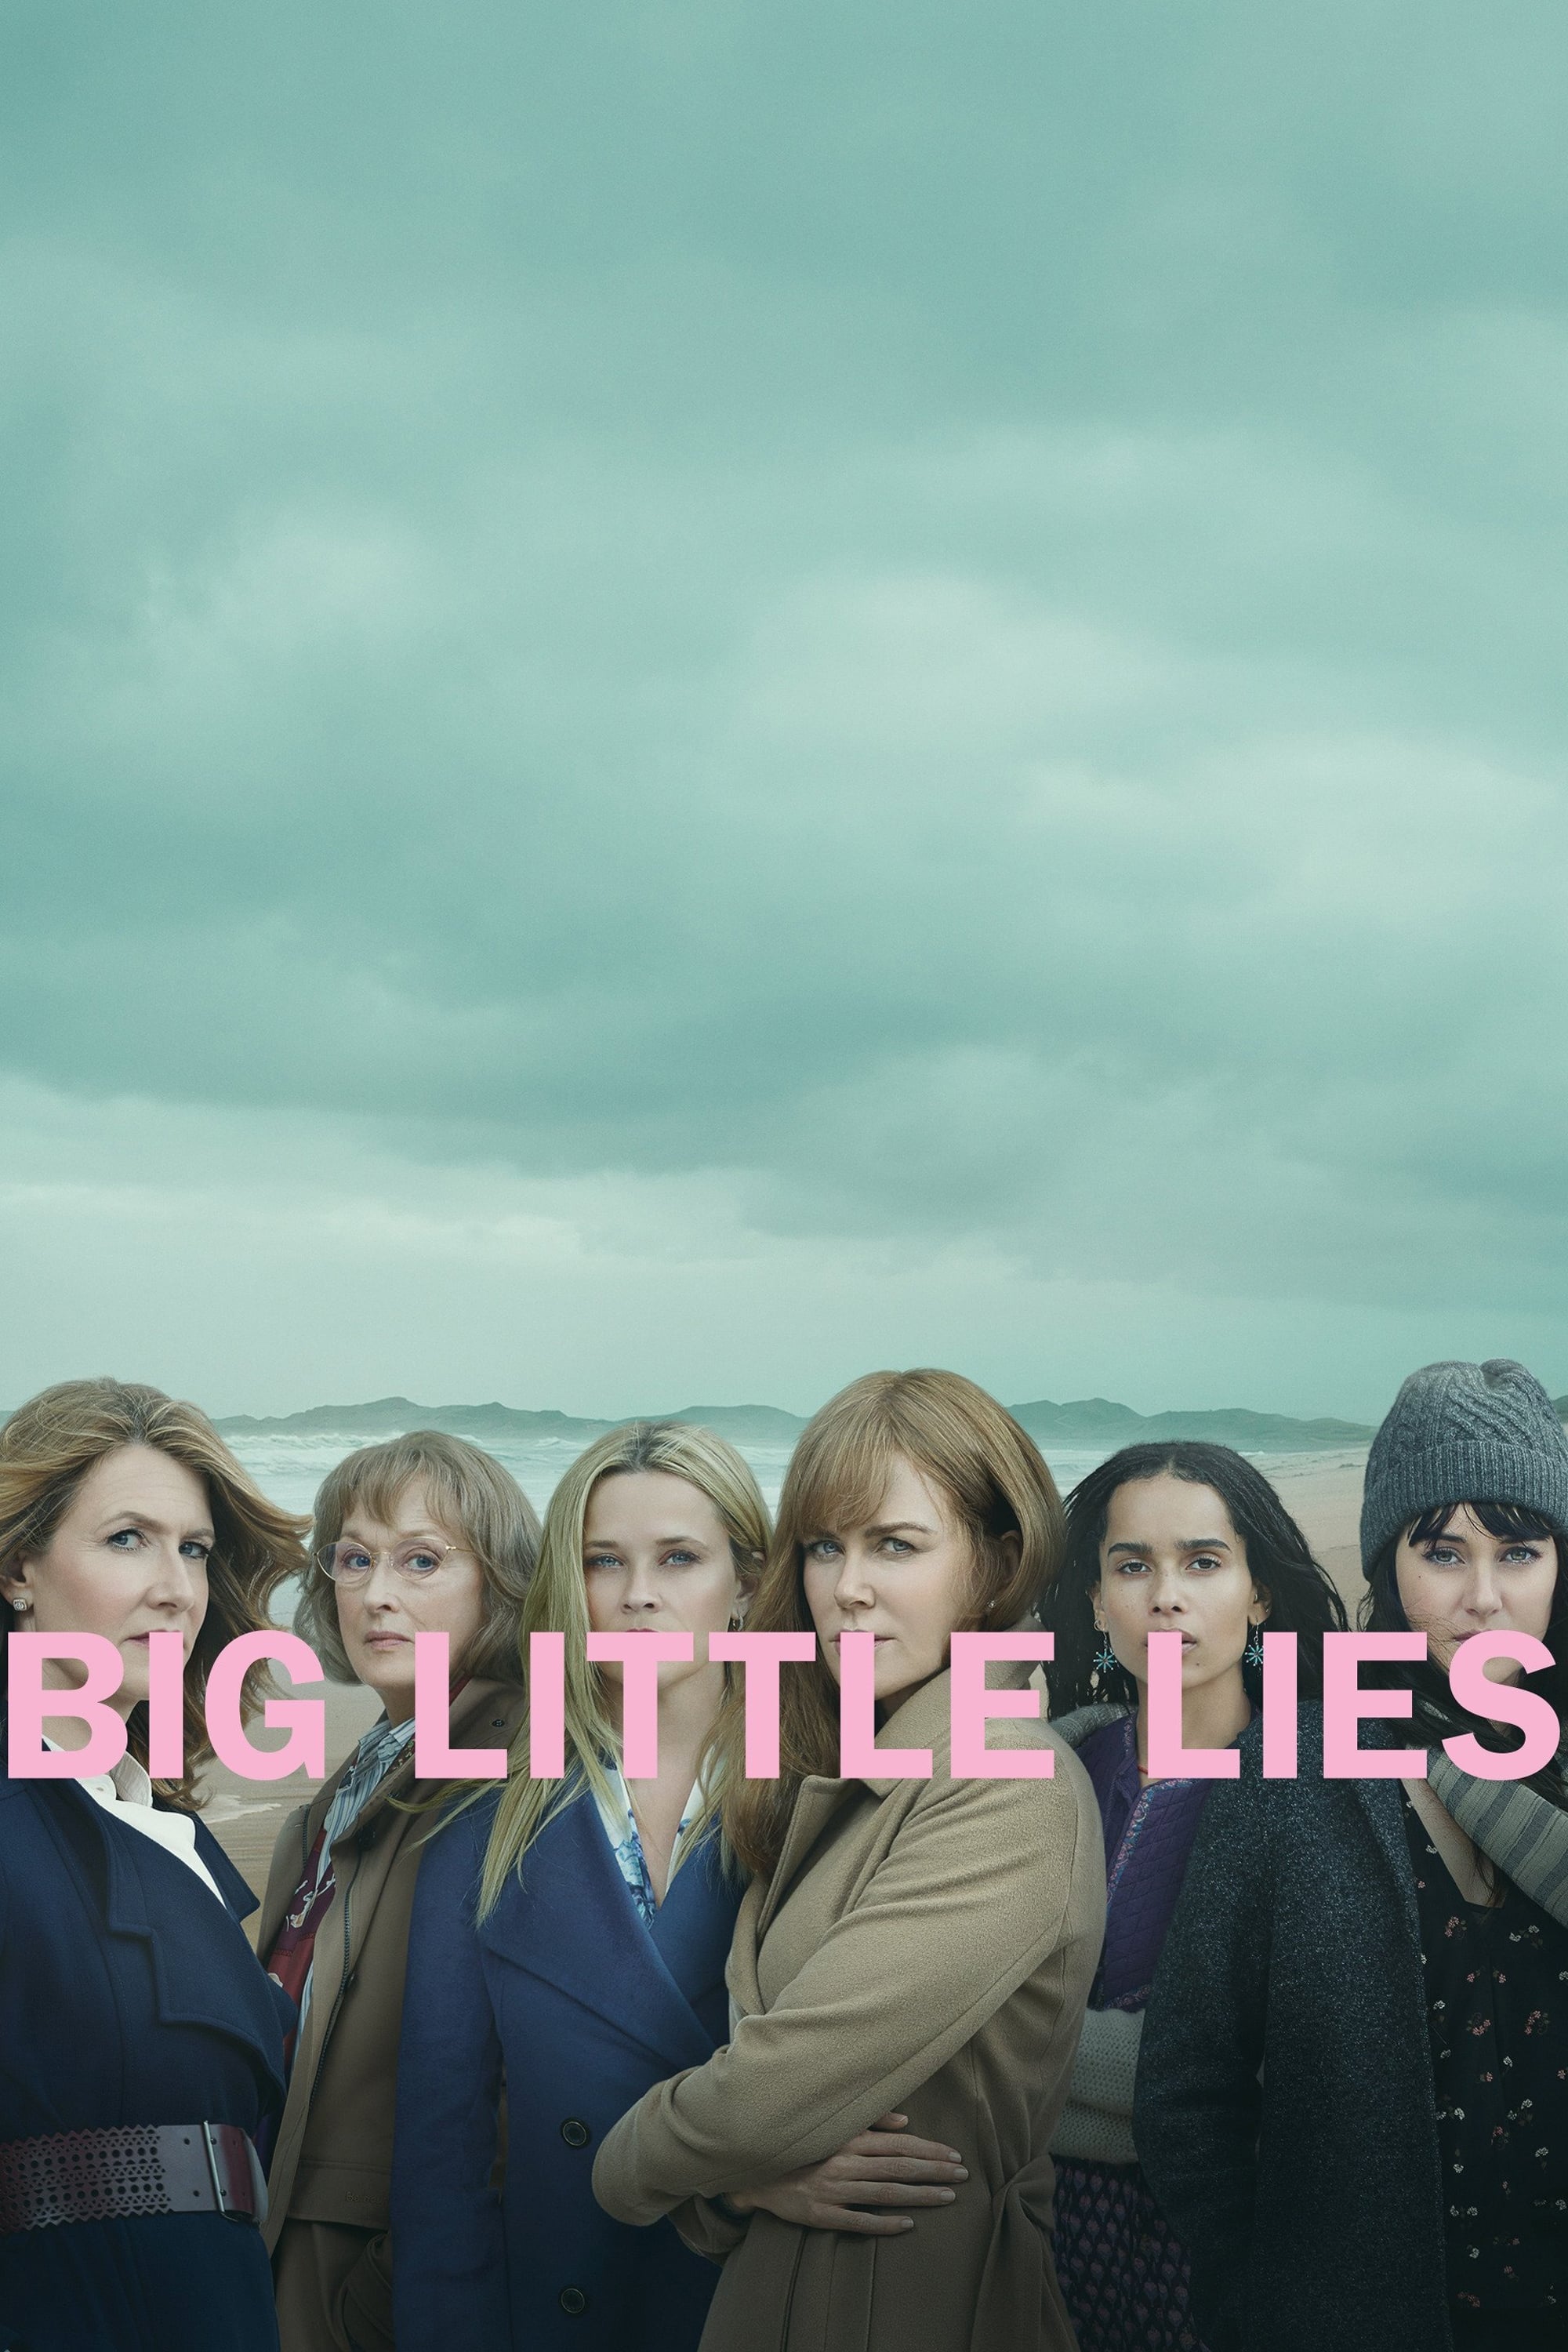 Big Little Lies TV Shows About Family Secrets